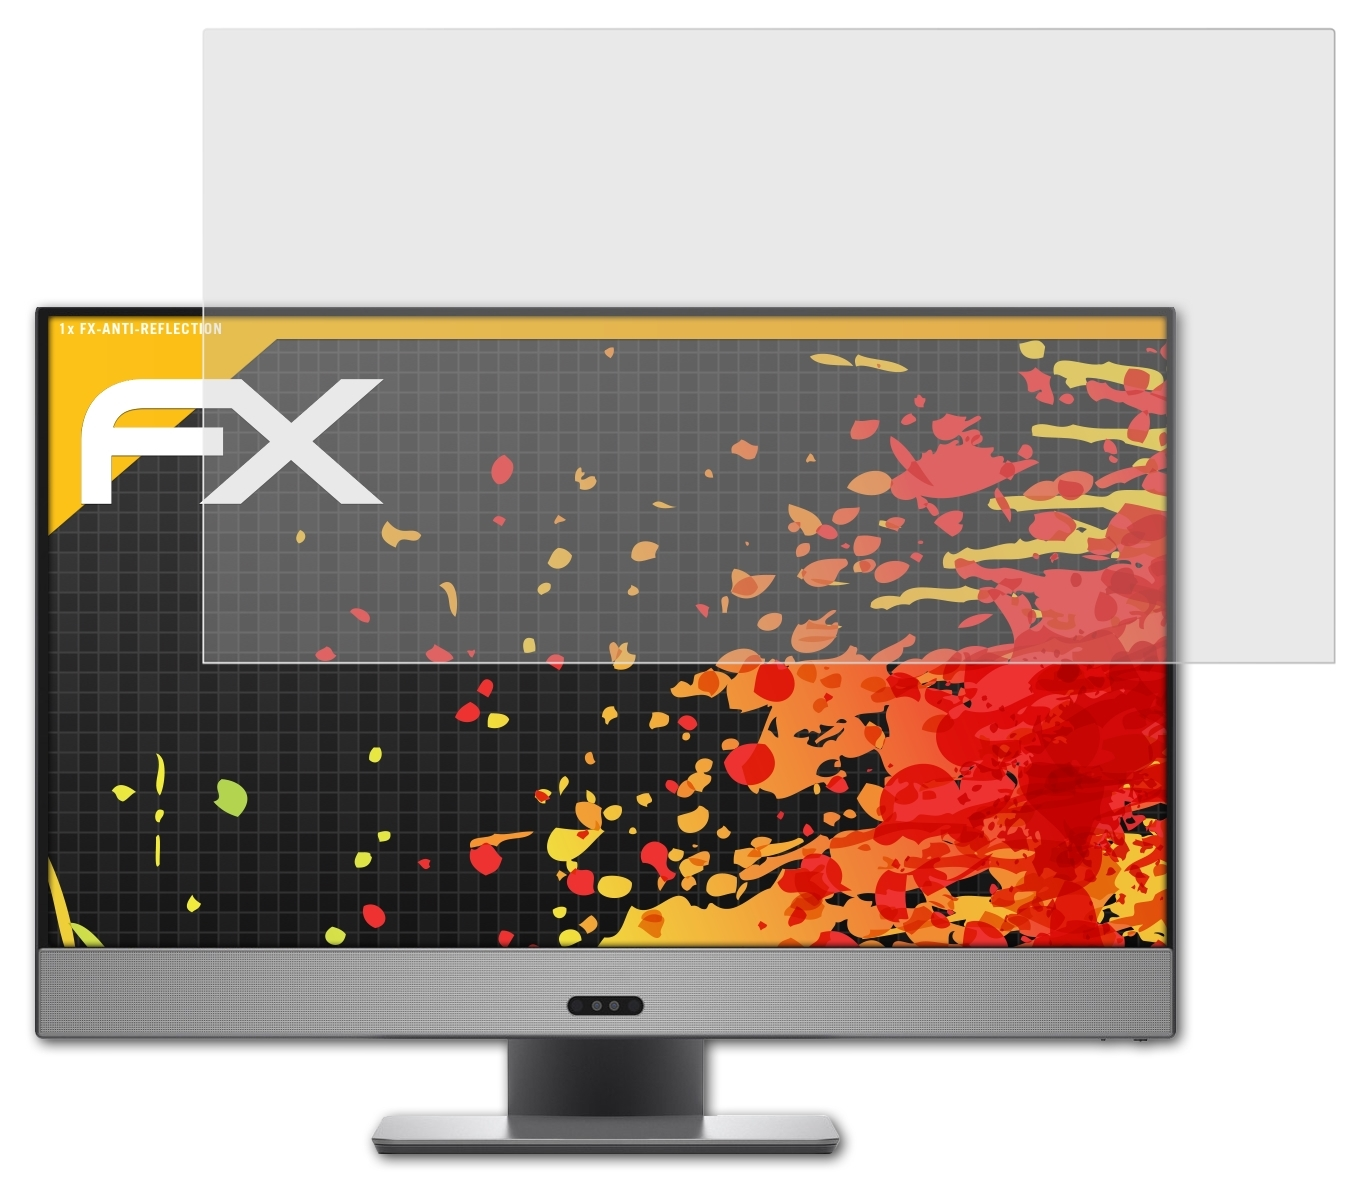 ATFOLIX FX-Antireflex Displayschutz(für 27 7000 Dell (7775)) Inspiron